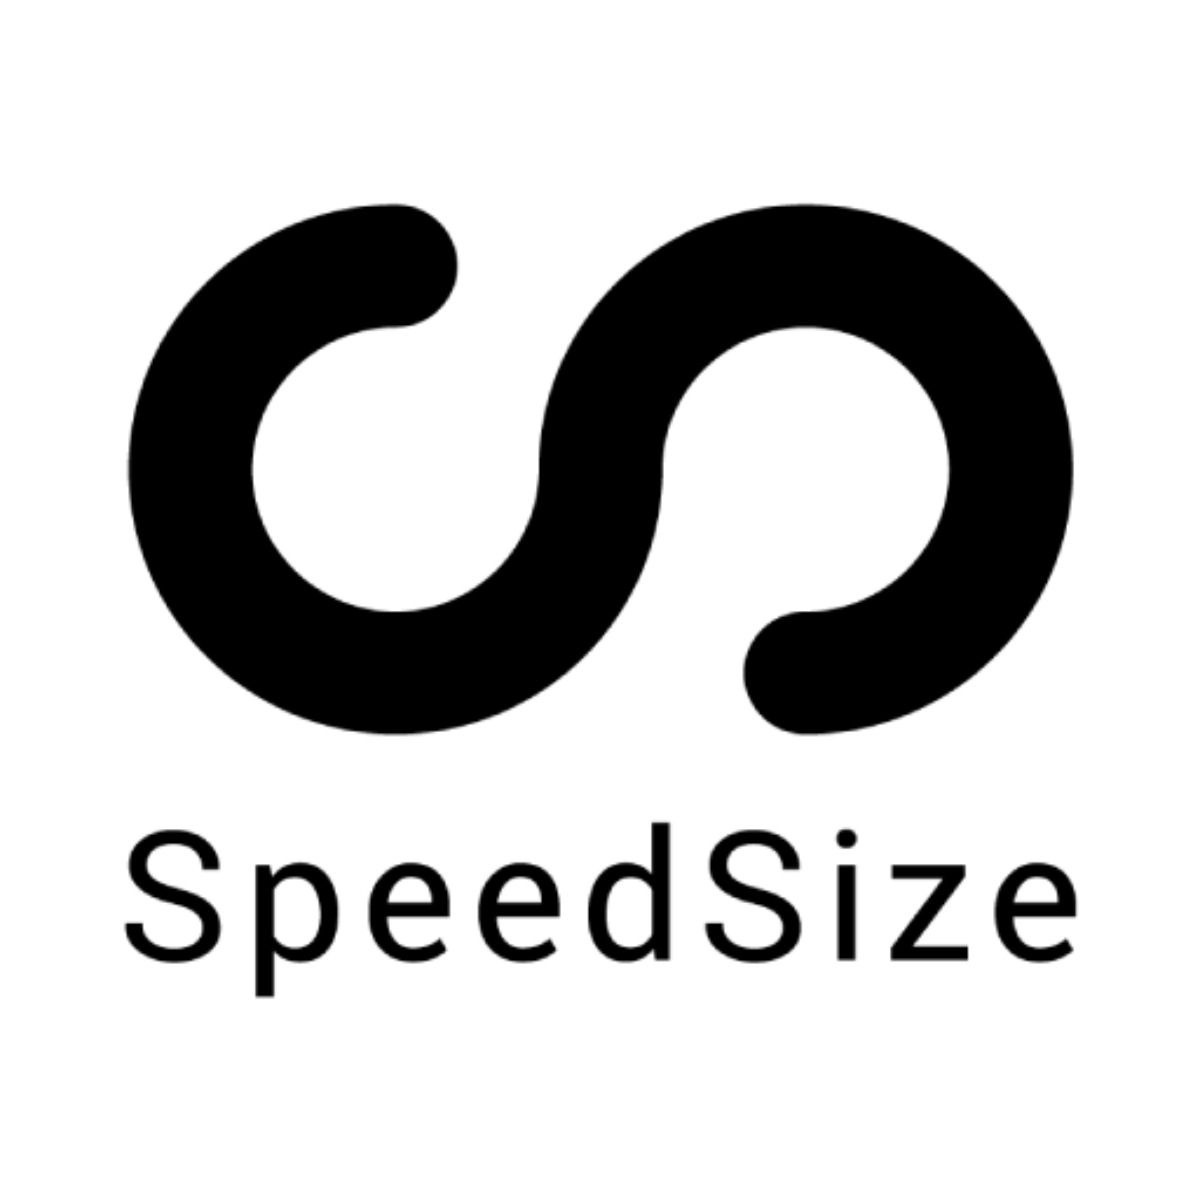 SpeedSize